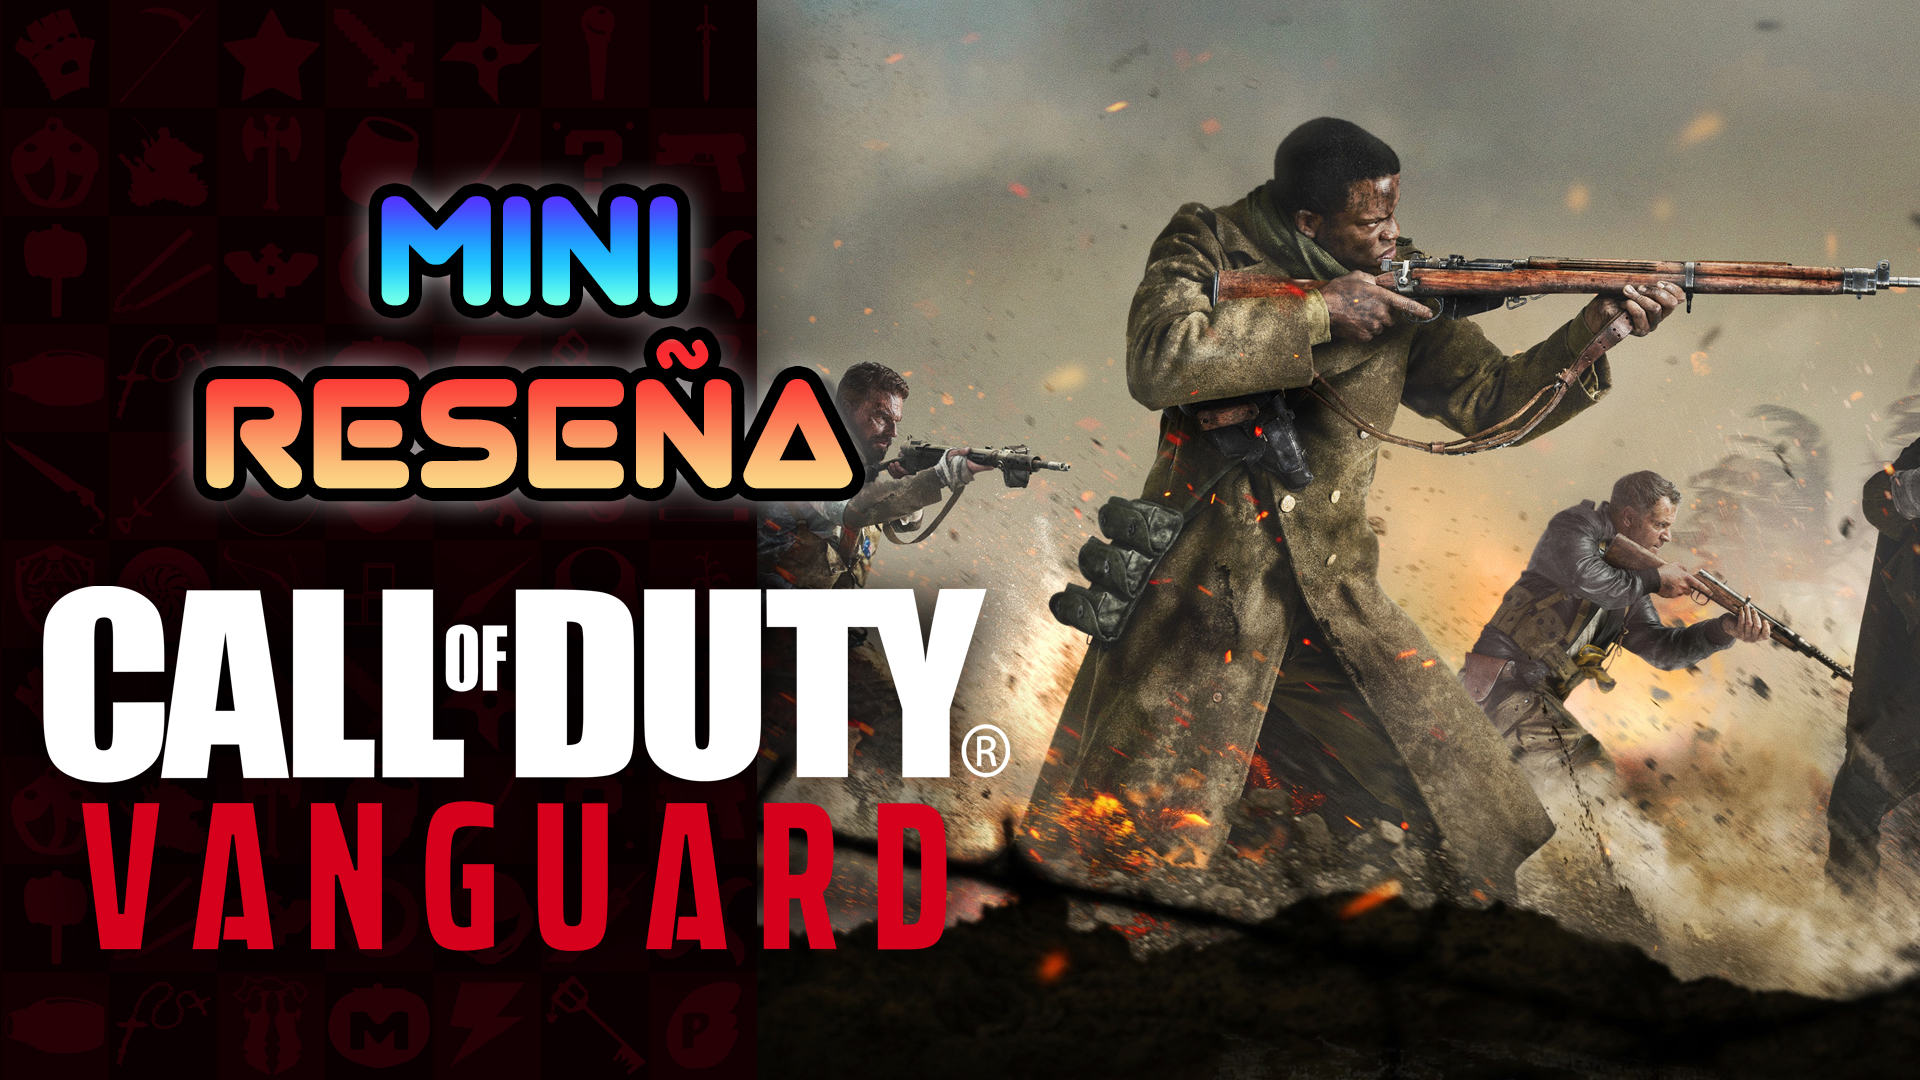 Mini Reseña Call of Duty: Vanguard